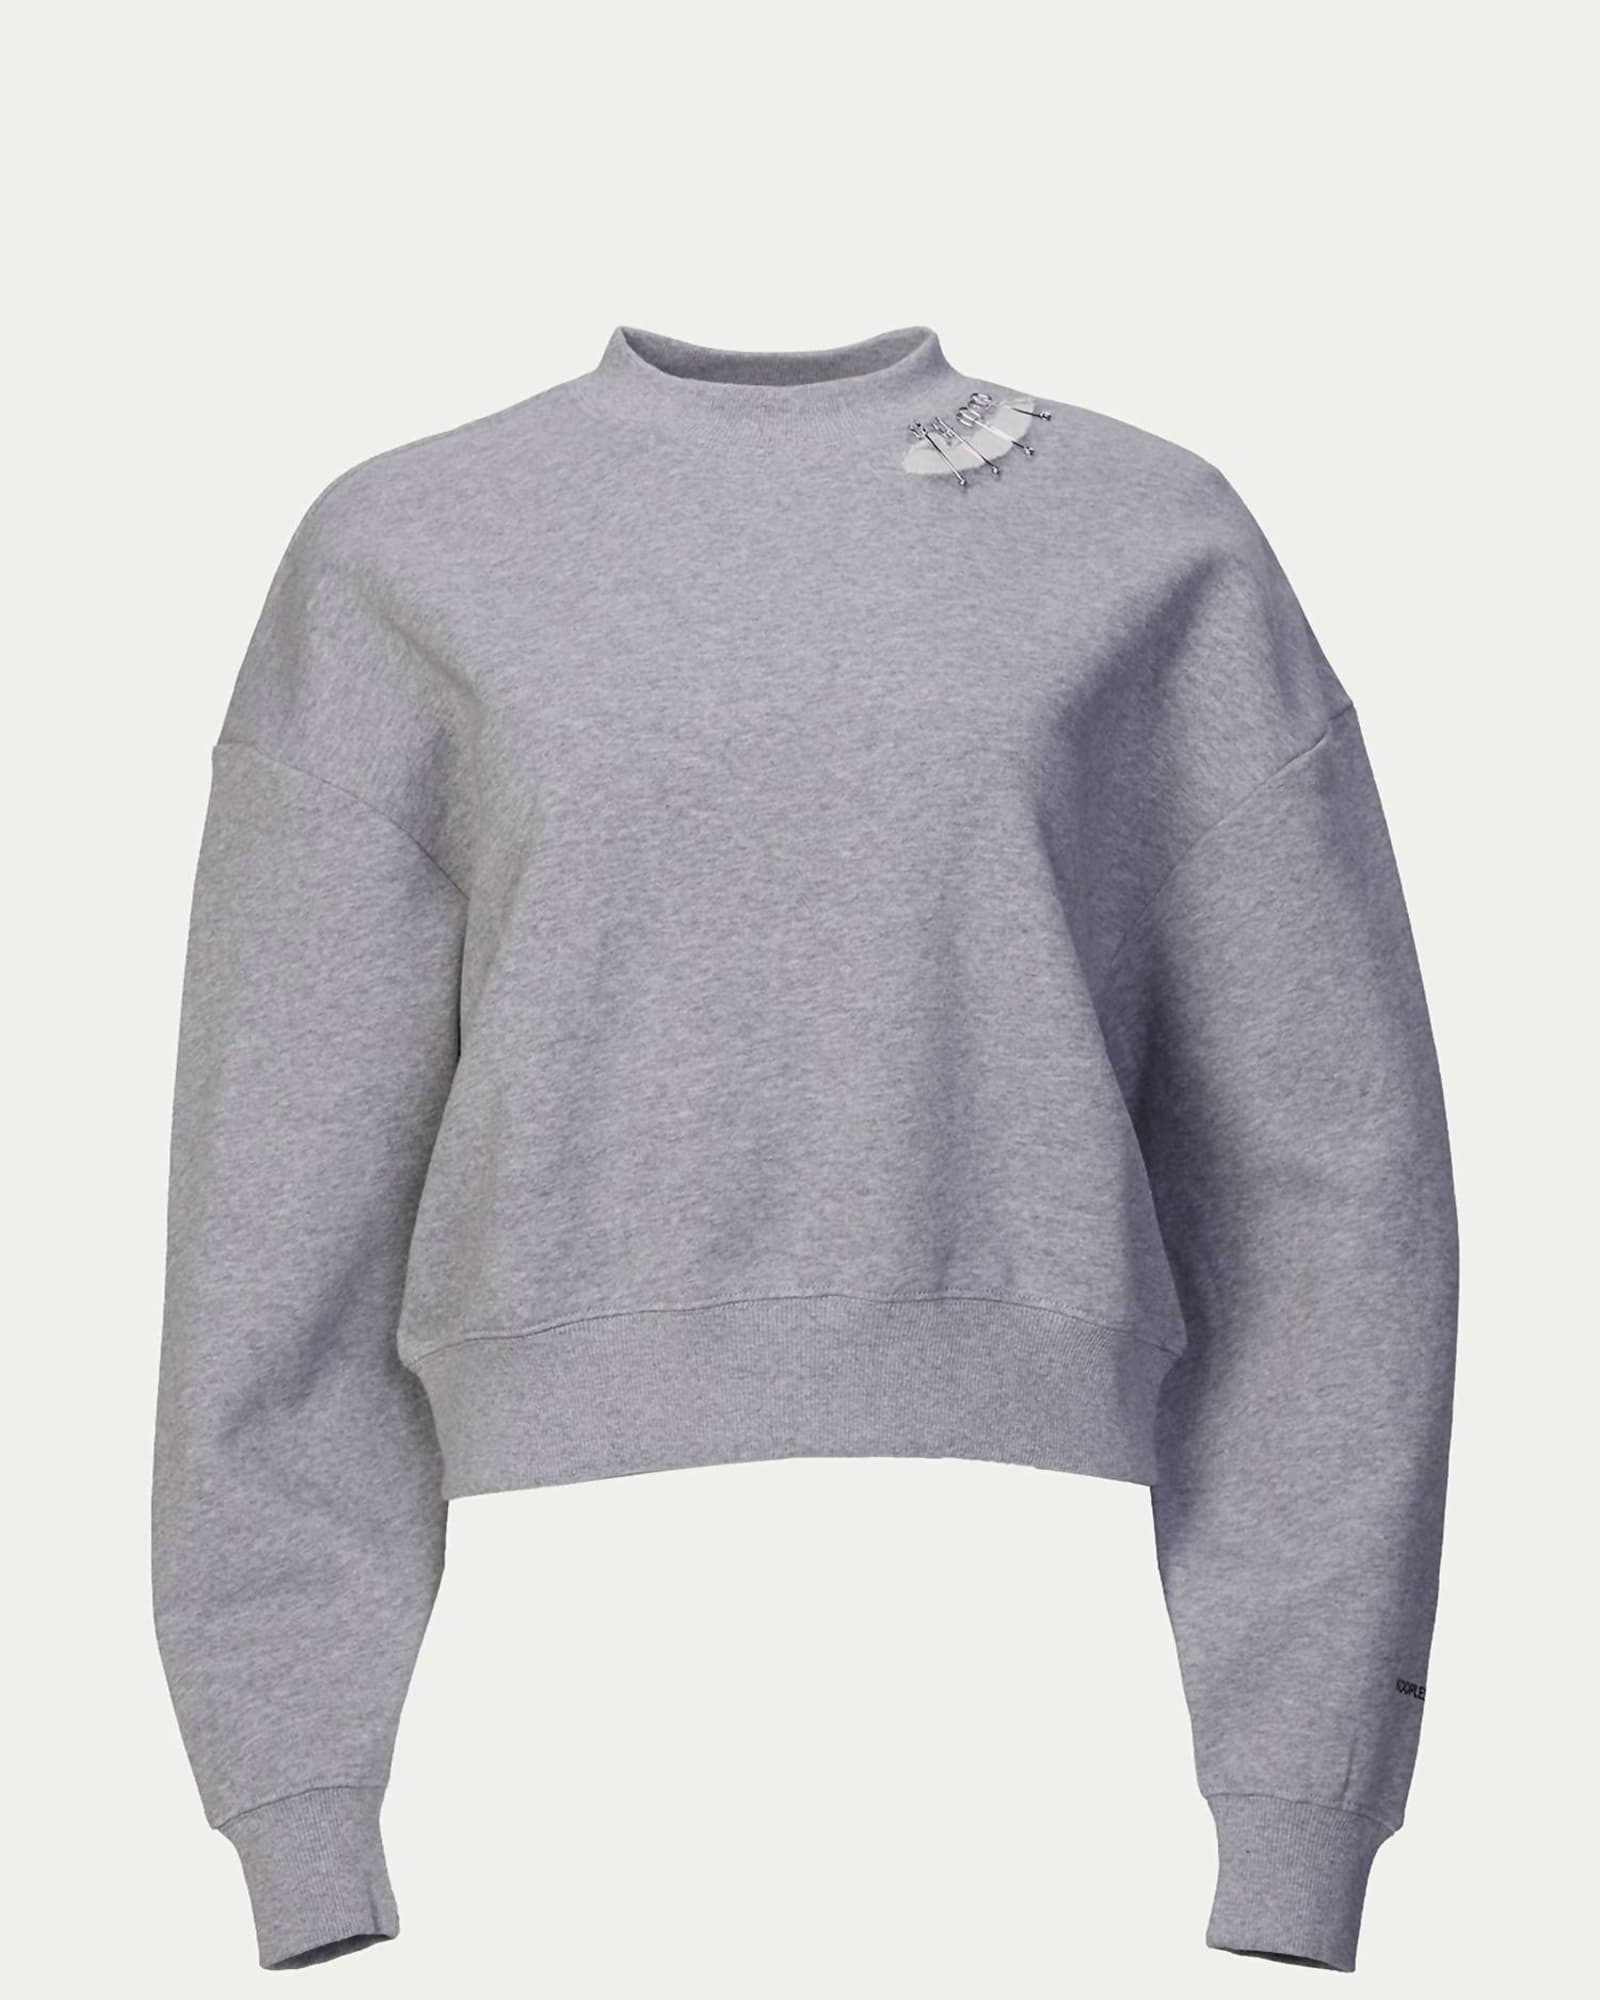 Sweatshirt With Metal Details in Grey | Grey